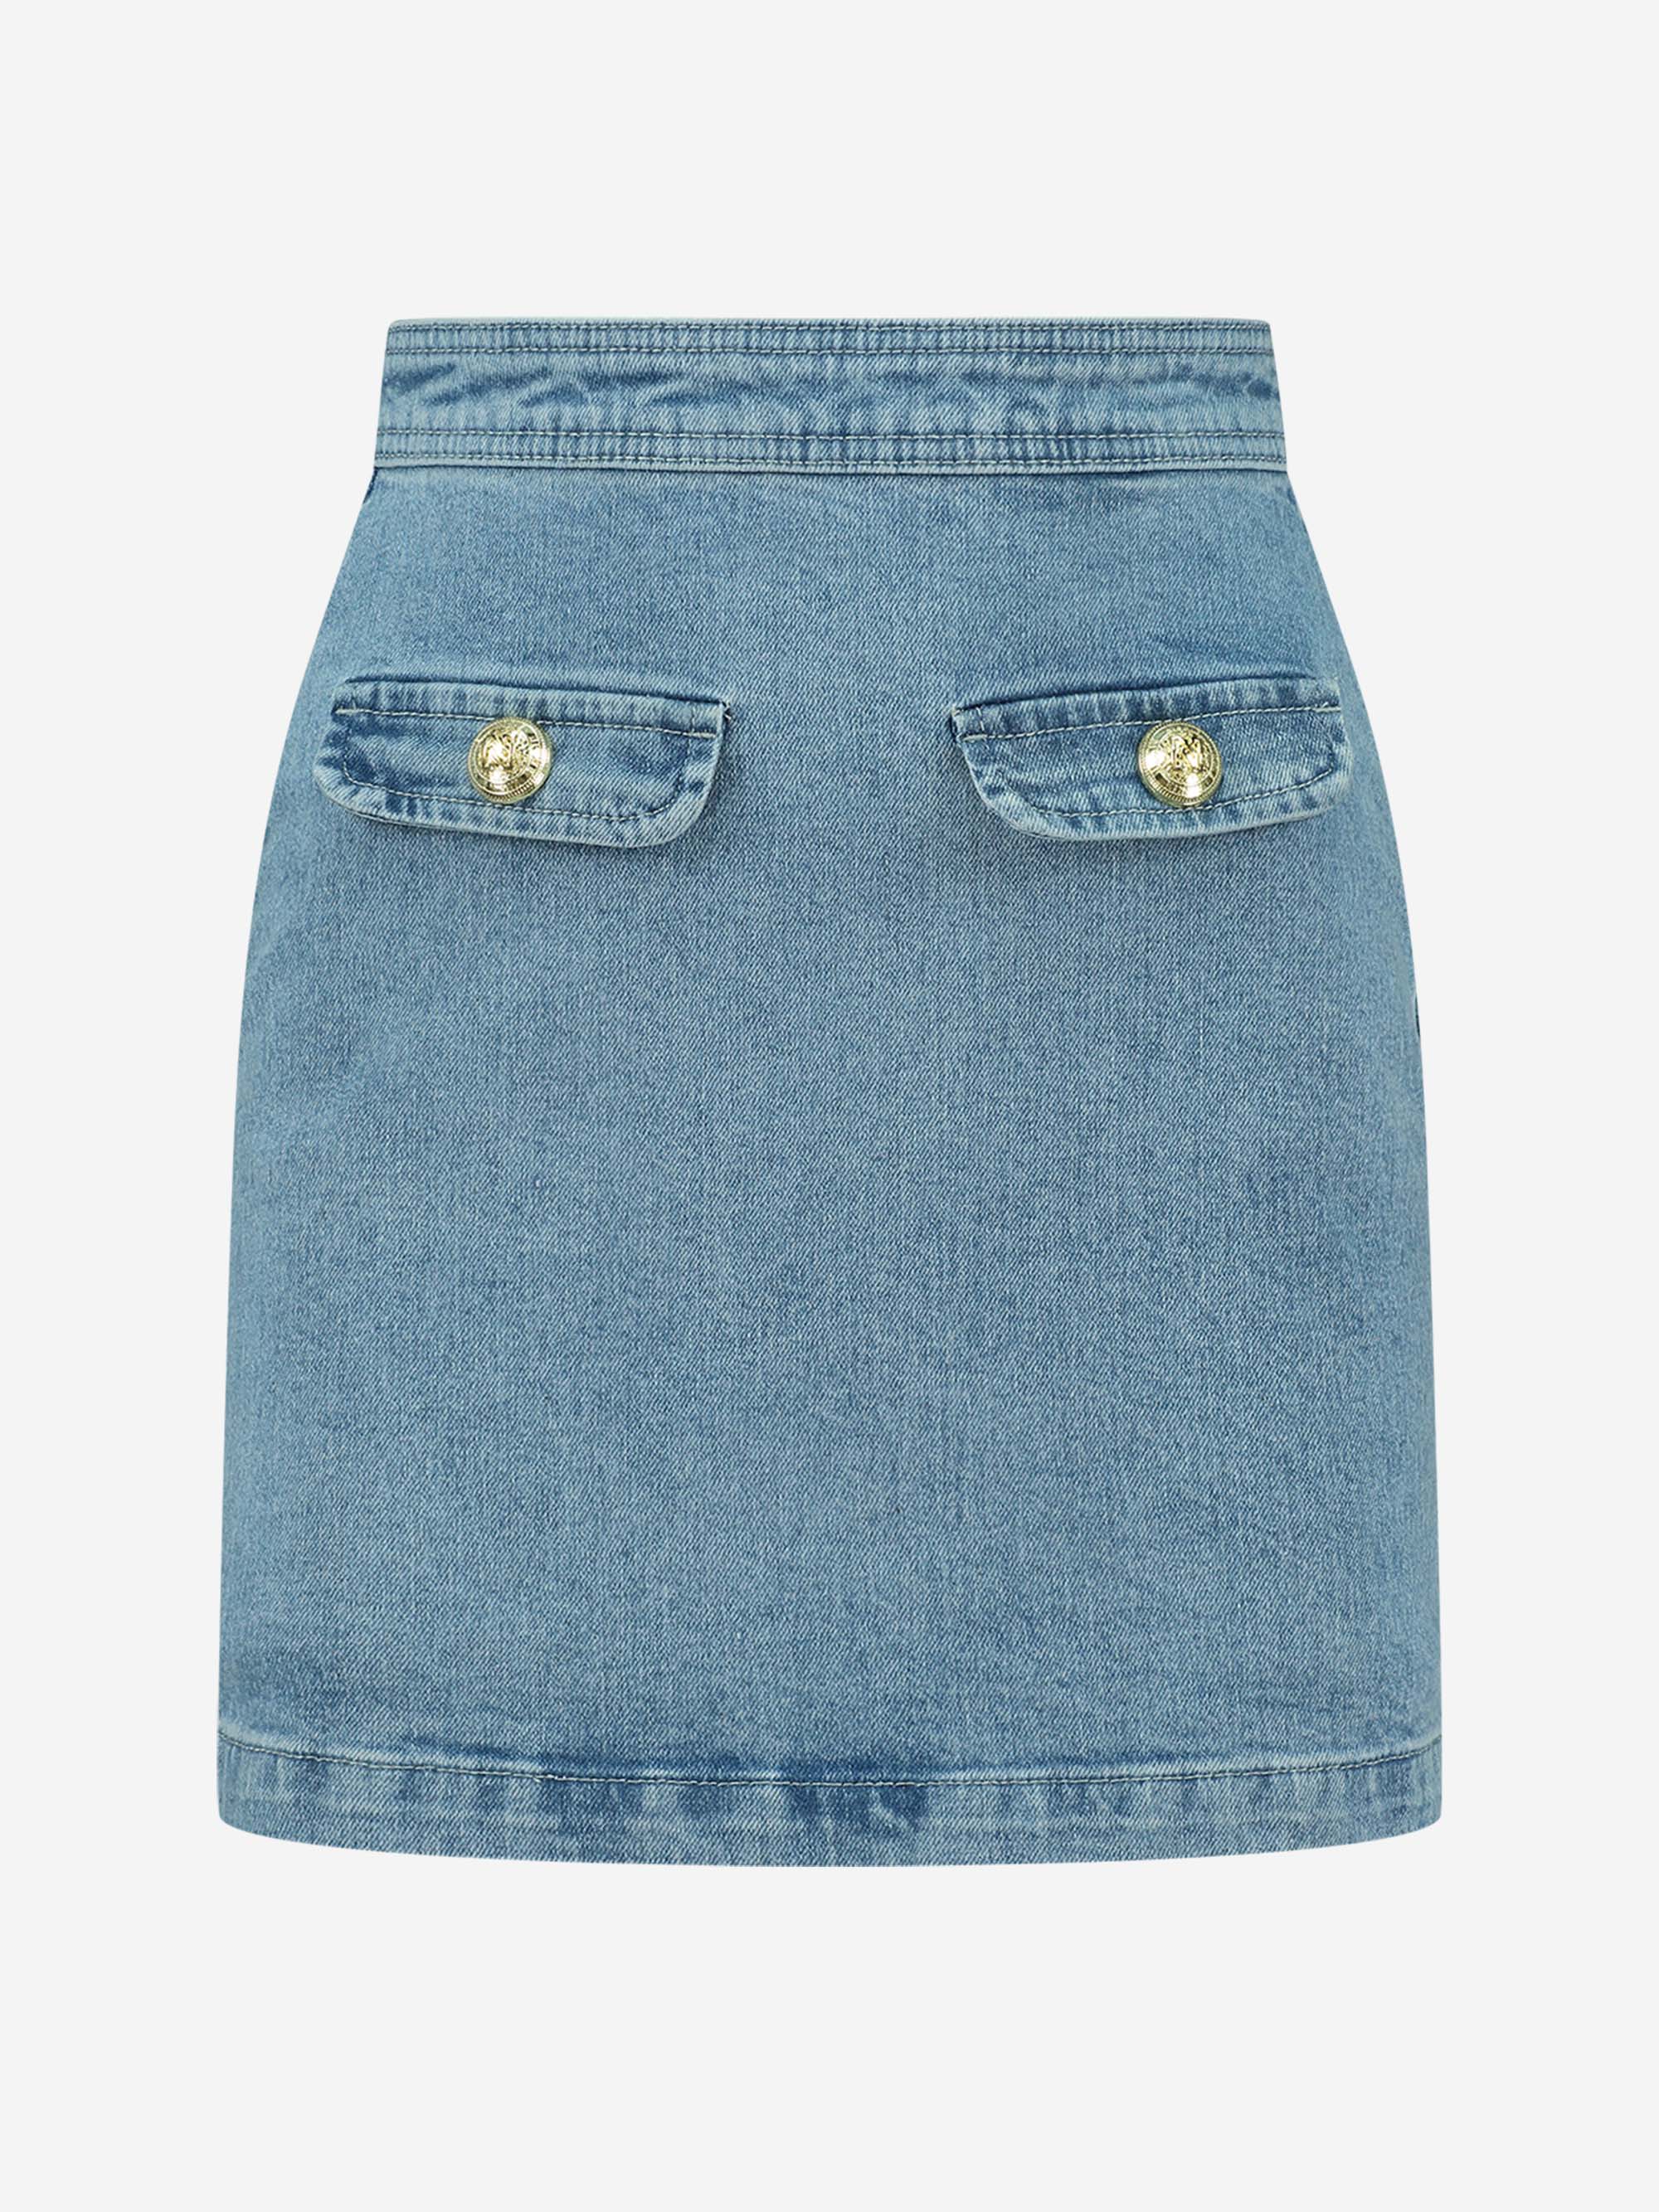 Chelsea Blue Denim Skirt